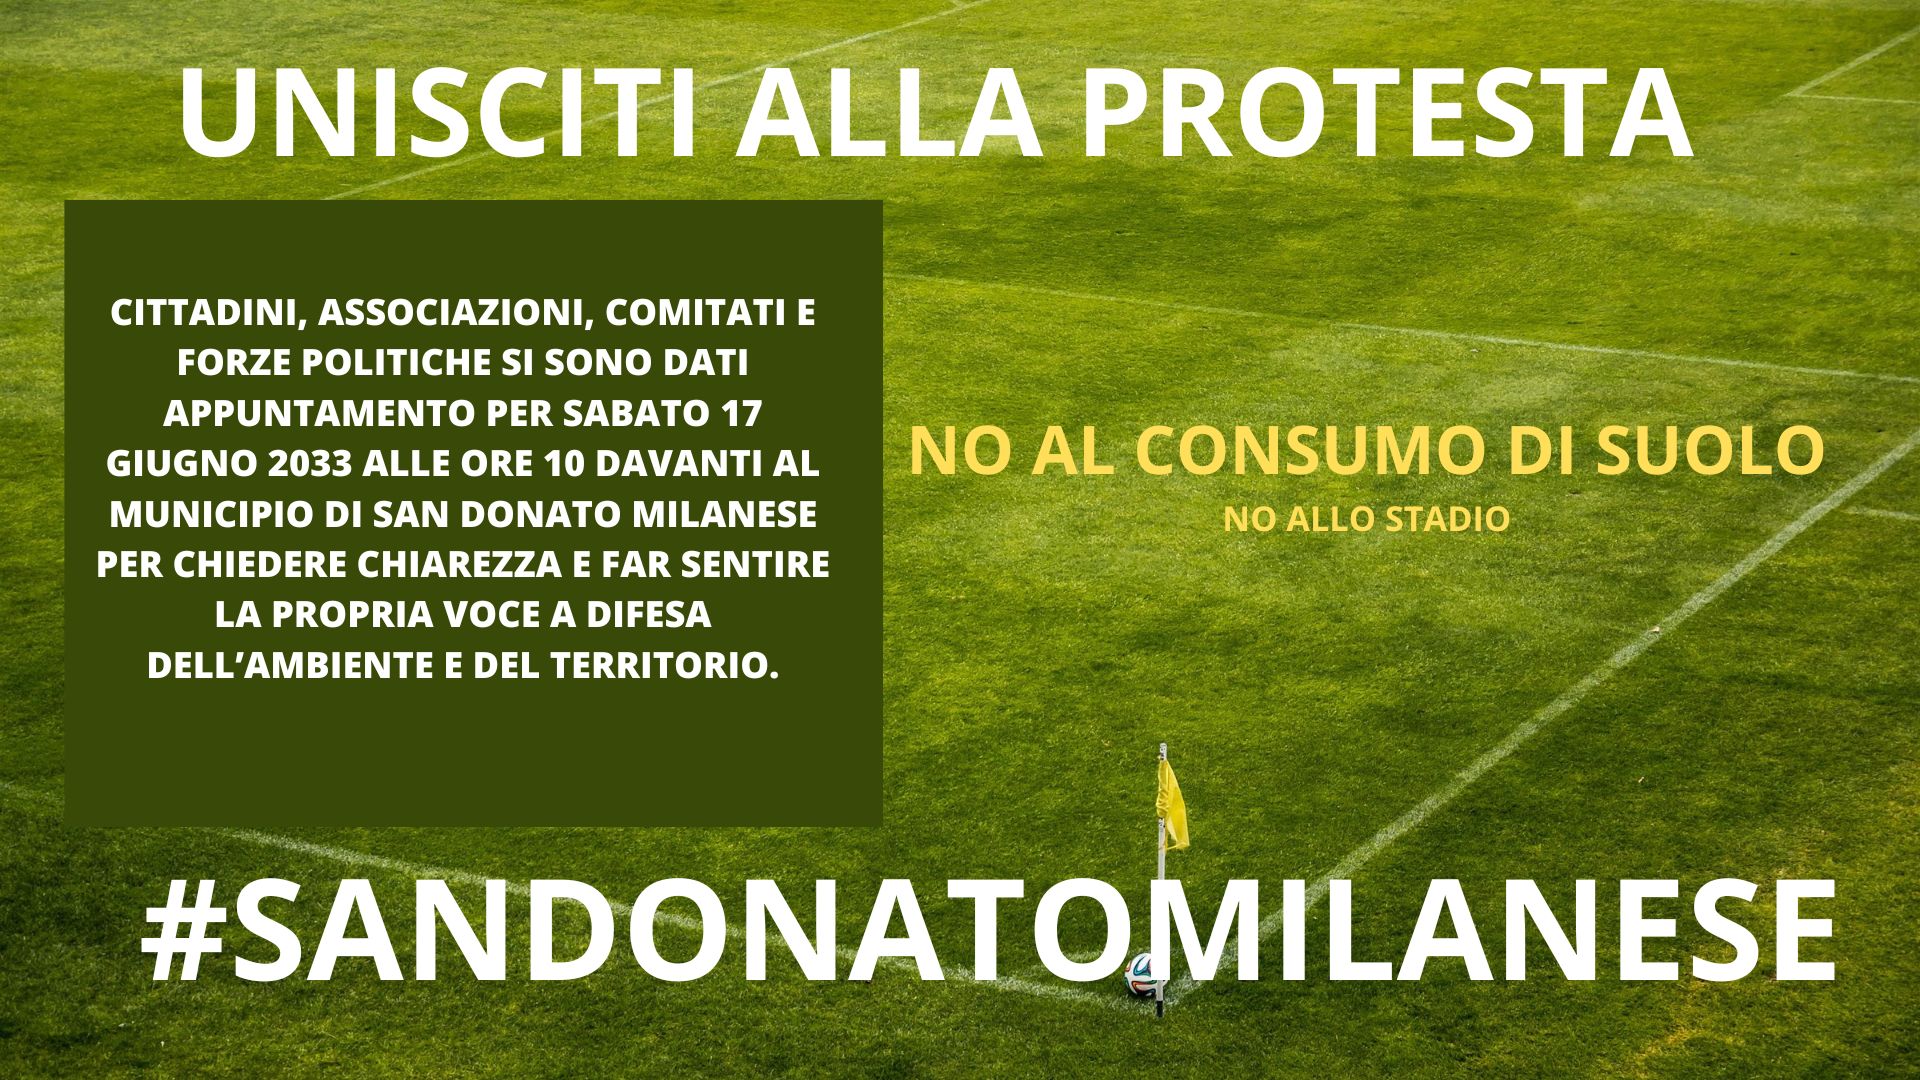 Manifestazione contro oo stadio del Milan e contro il consumo di suolo - San Doanto Milanese 17 Giugno 2023 davanti al Comune di San Donato Milanese alle ore 10:00